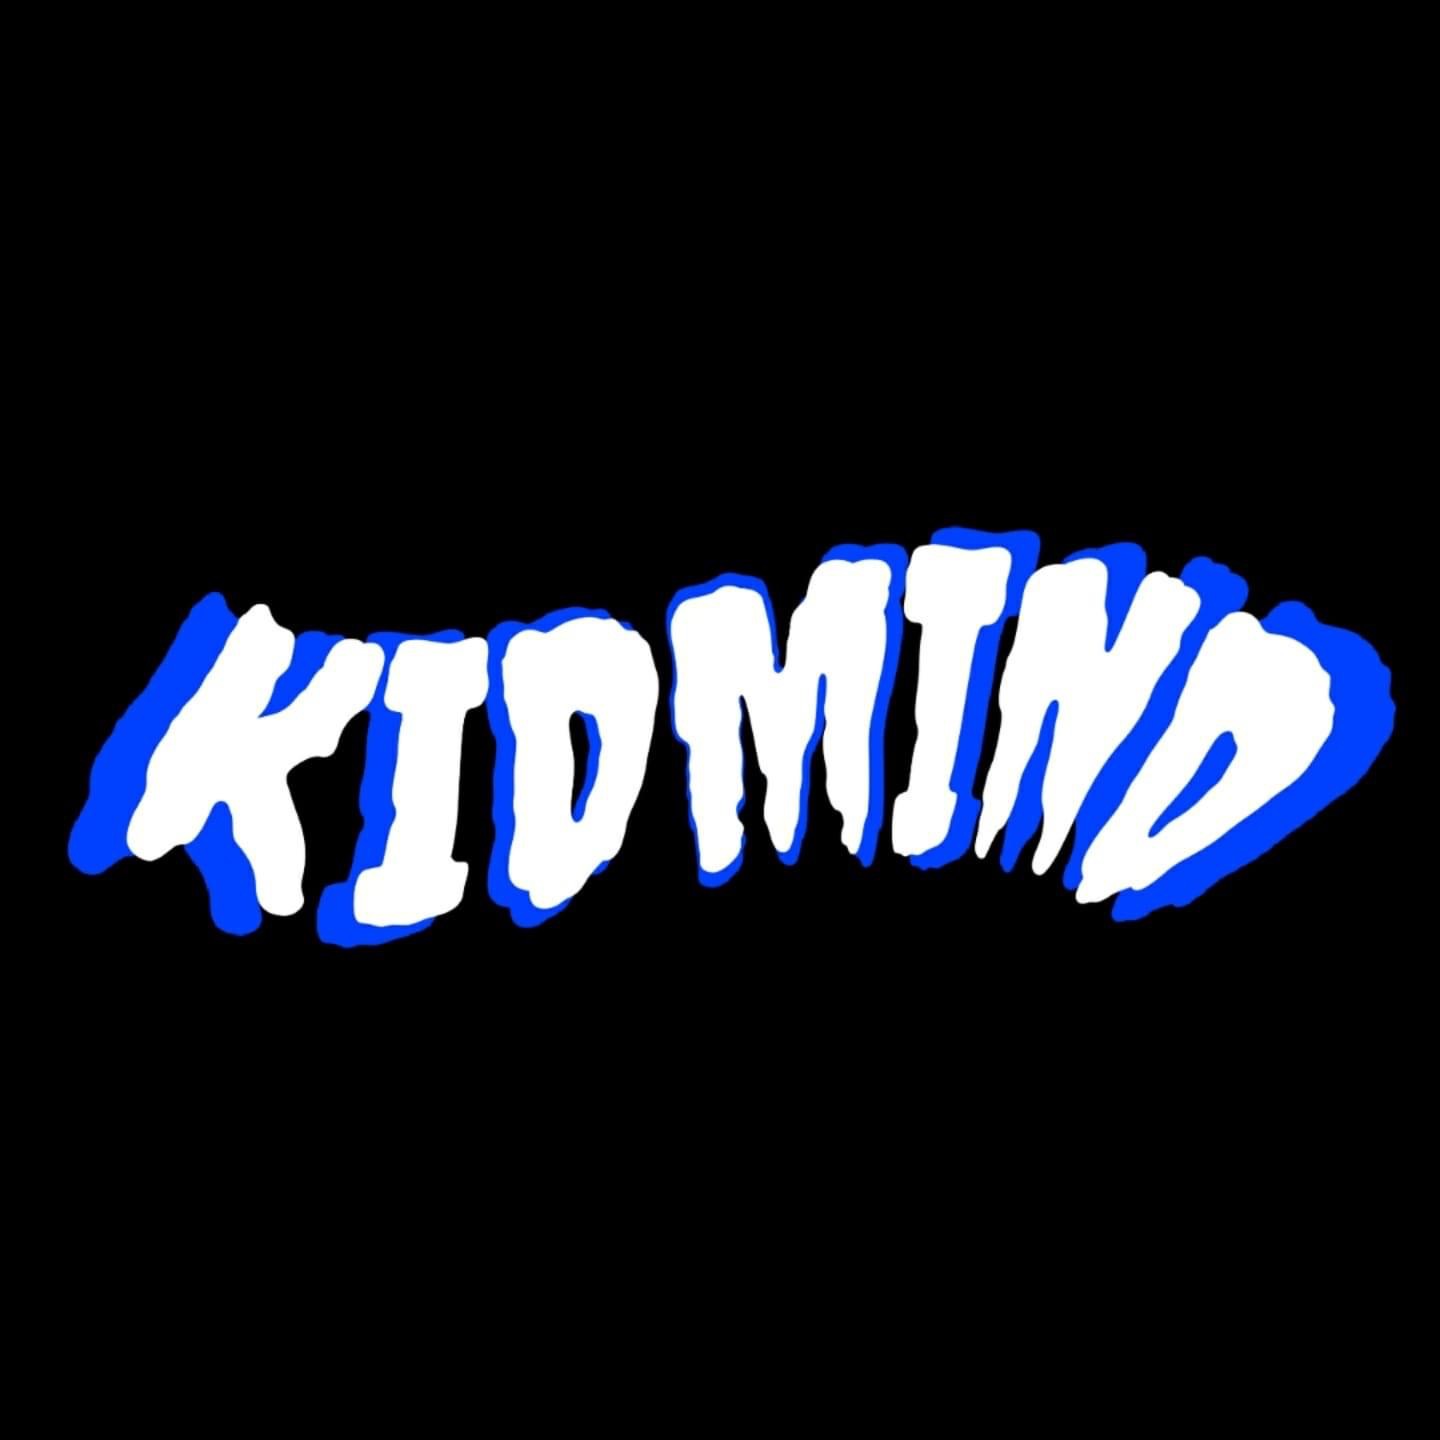 Kidmind estrena canción con Carpyro.